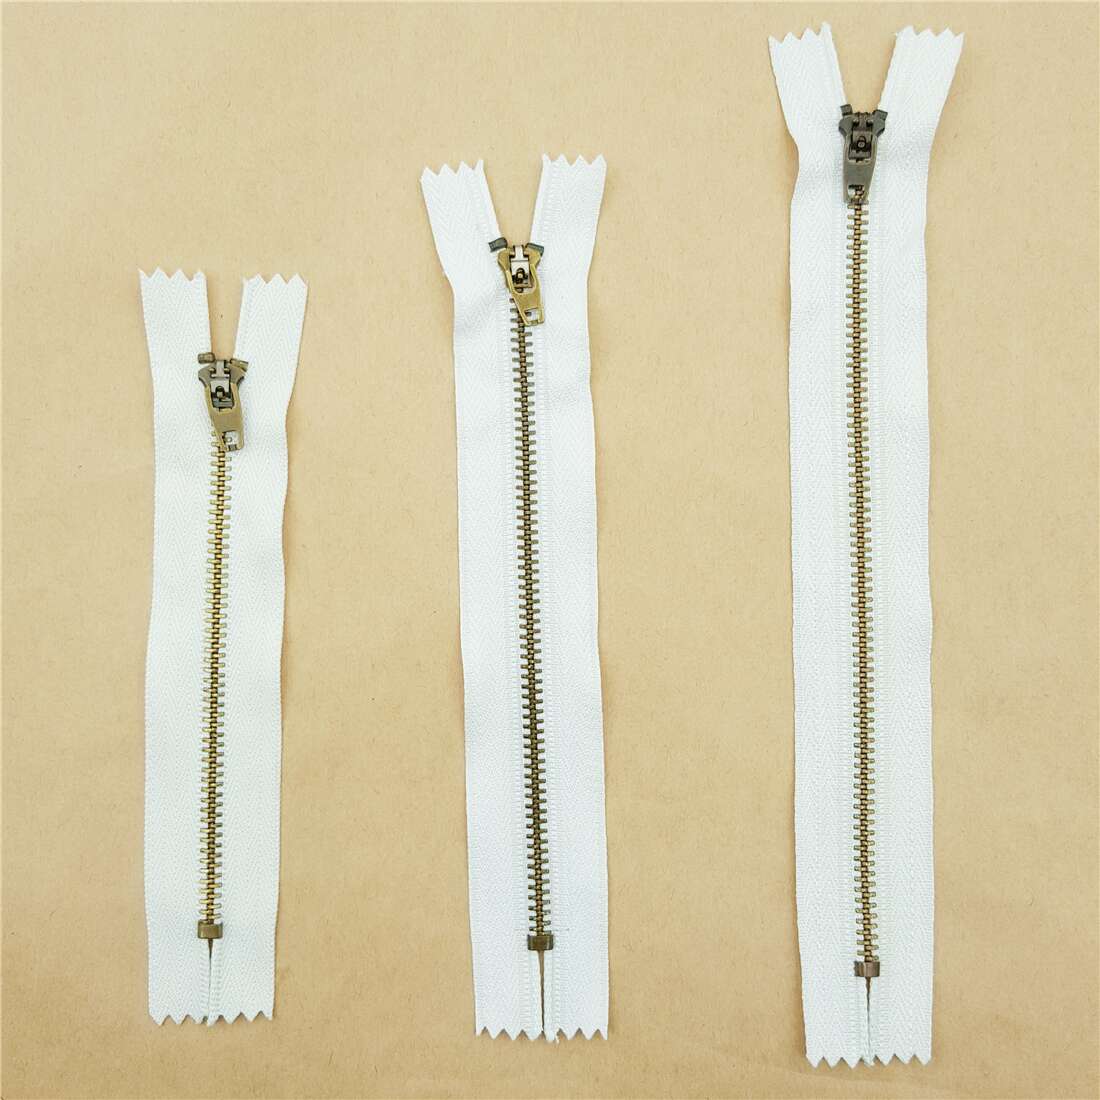 4.6 inch metal zipper in white 11.9cm - modeS4u